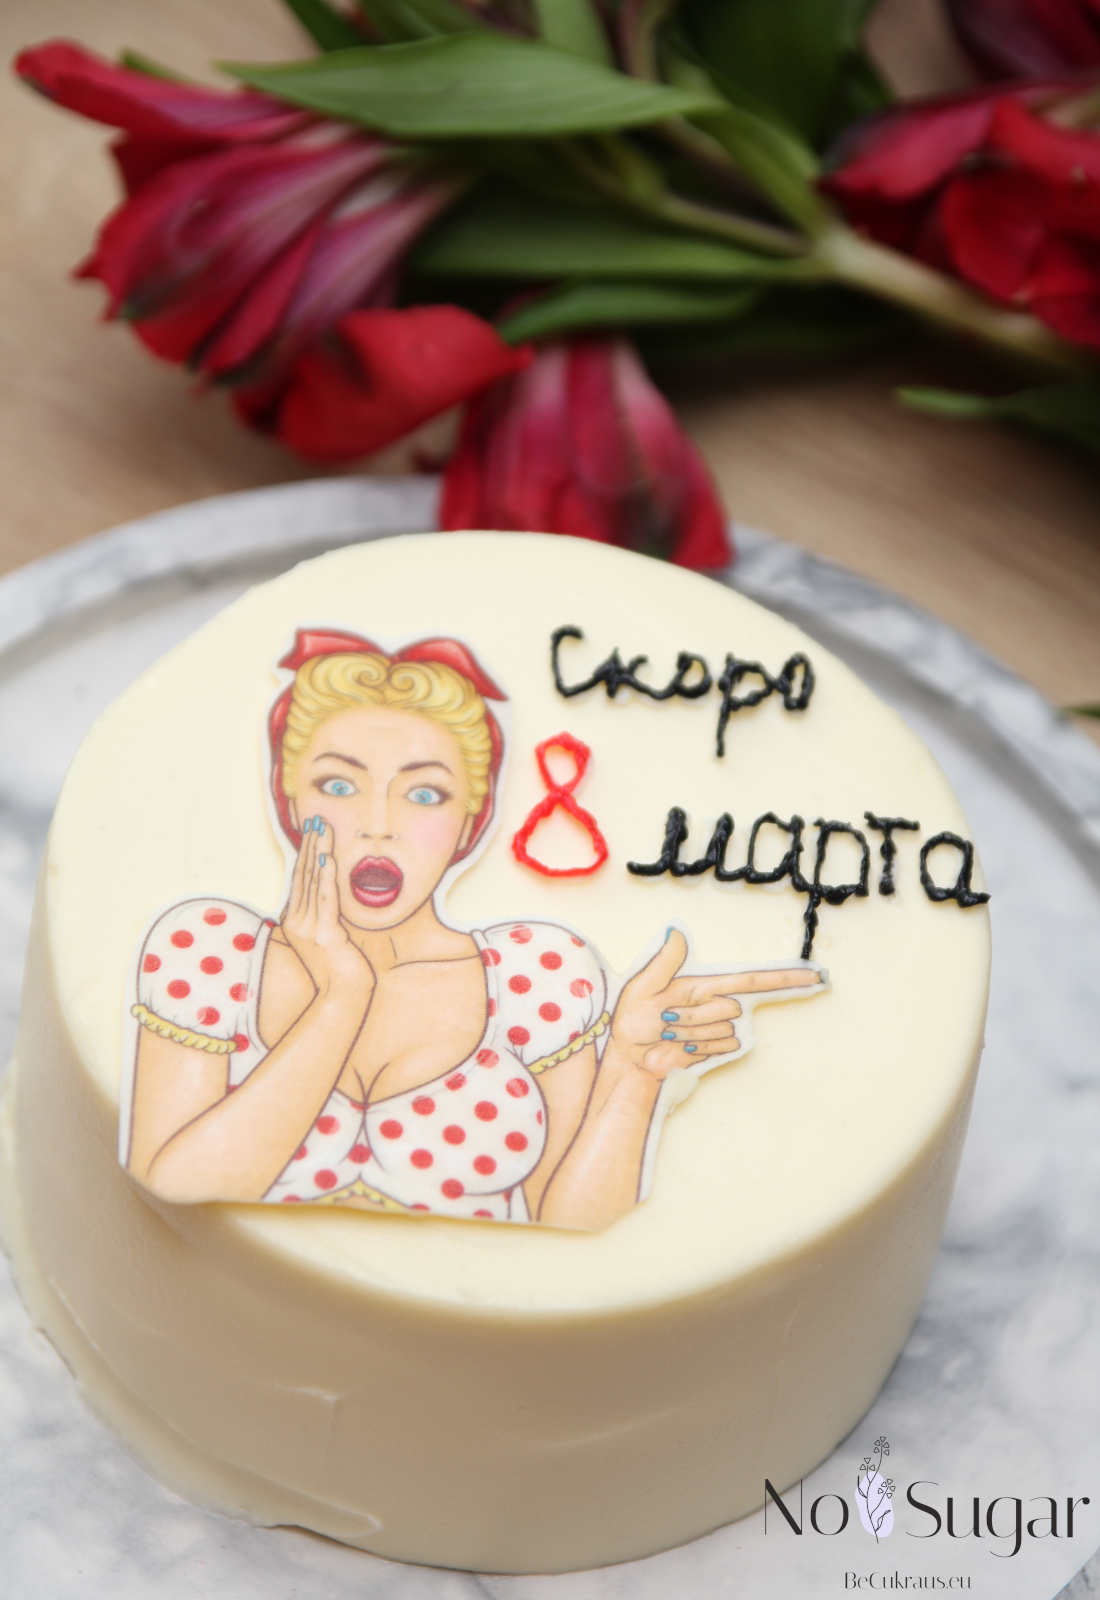 Bento tortas be cukraus kovo 8 dieną Vilniuje - Tarptautinė moters diena